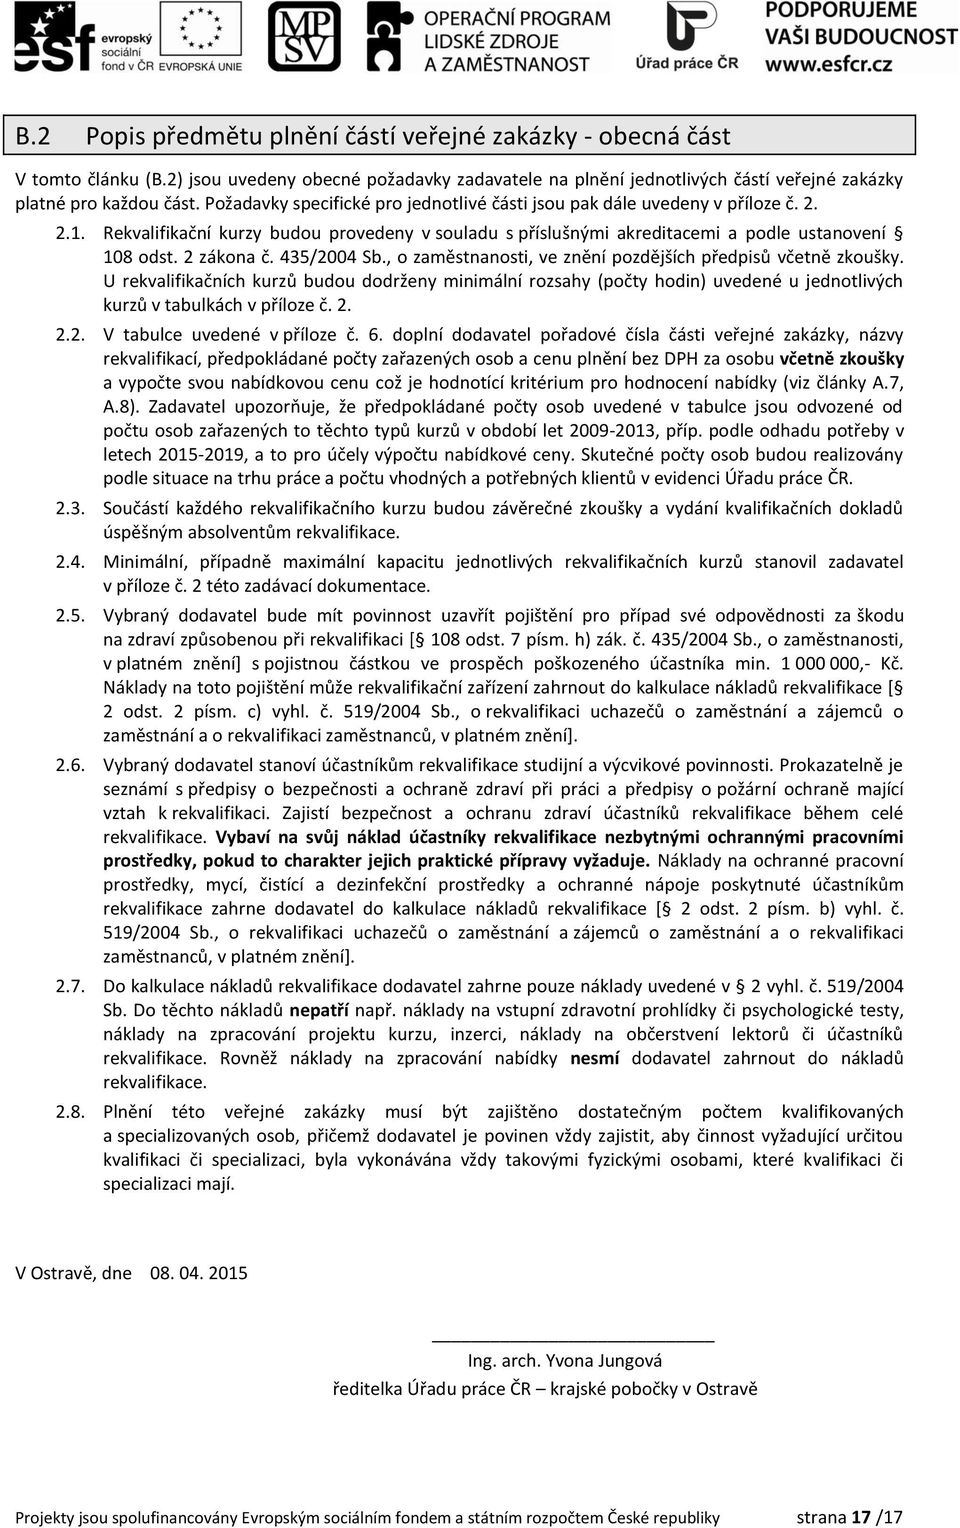 435/2004 Sb., o zaměstnanosti, ve znění pozdějších předpisů včetně zkoušky.